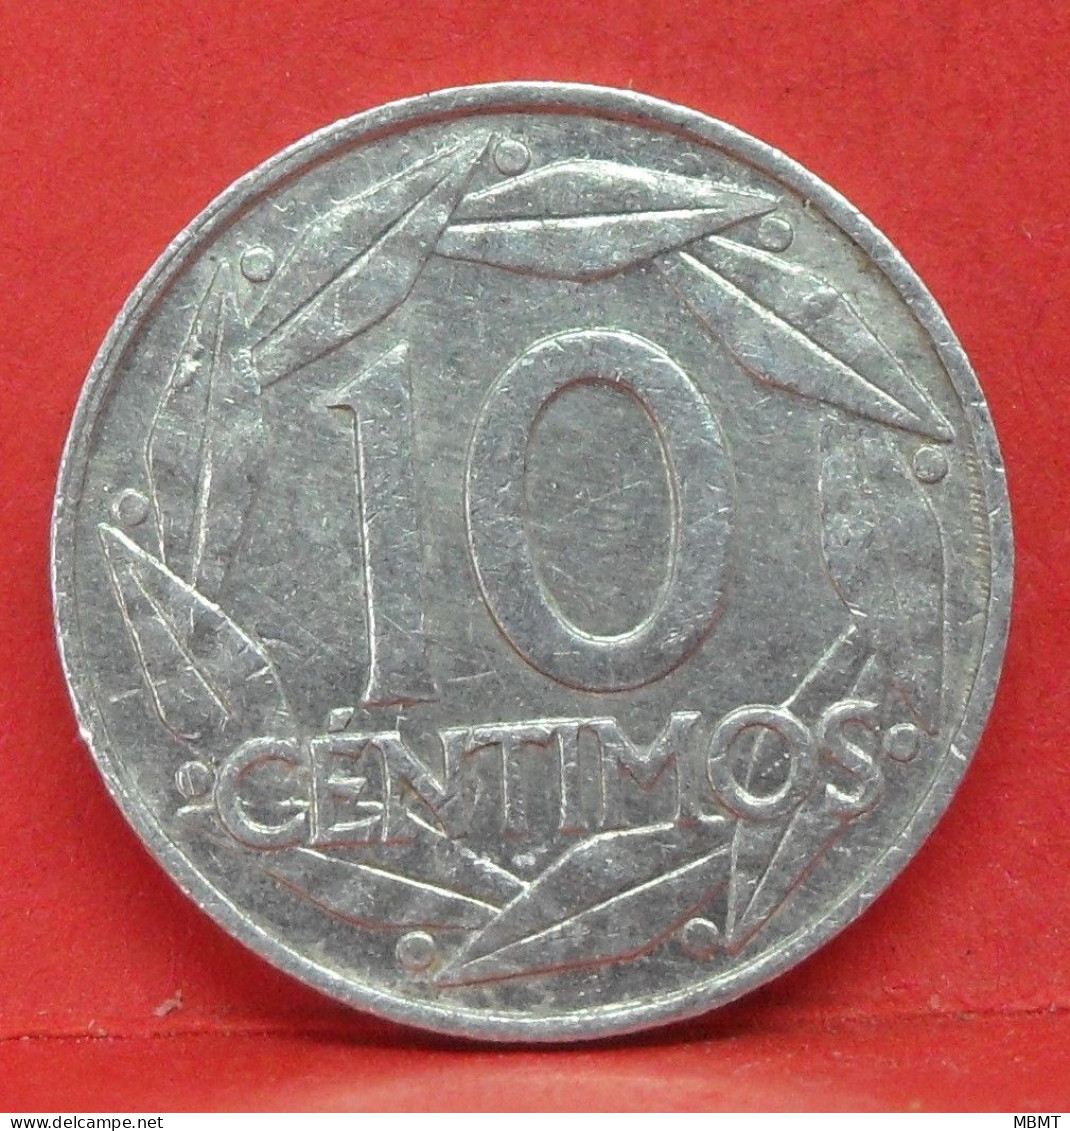 10 Centimos 1959 - TTB - Pièce Monnaie Espagne - Article N°2208 - 10 Centesimi